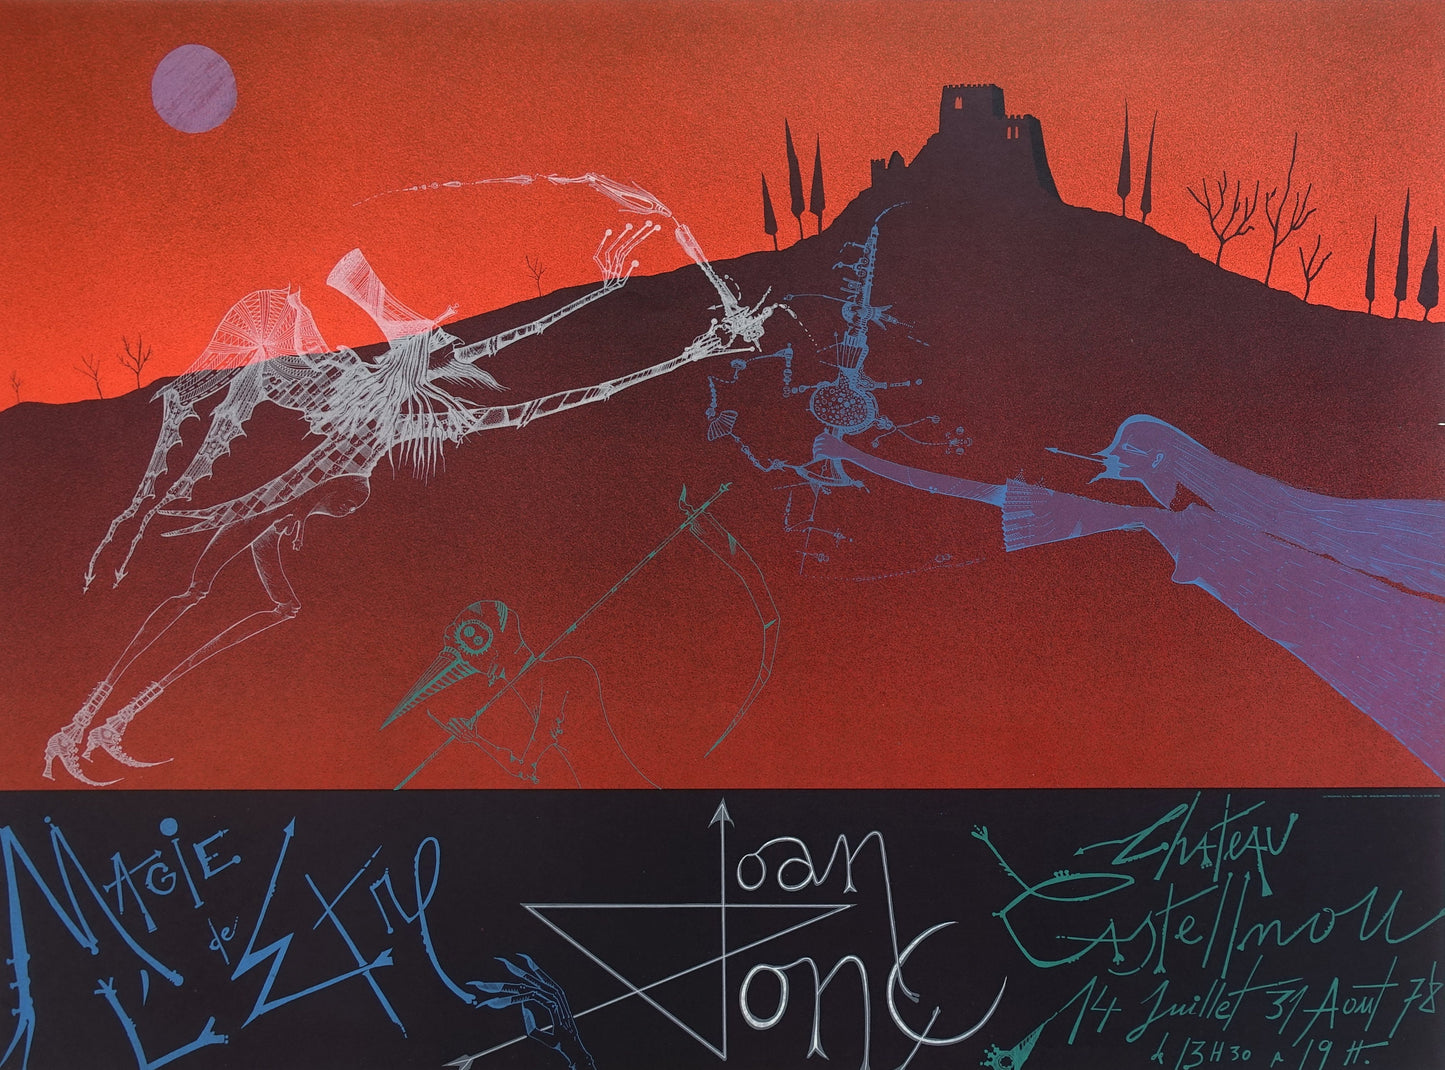 1978 Joan Ponc Chateau Castelnou Exhibition Poster - Original Vintage Poster